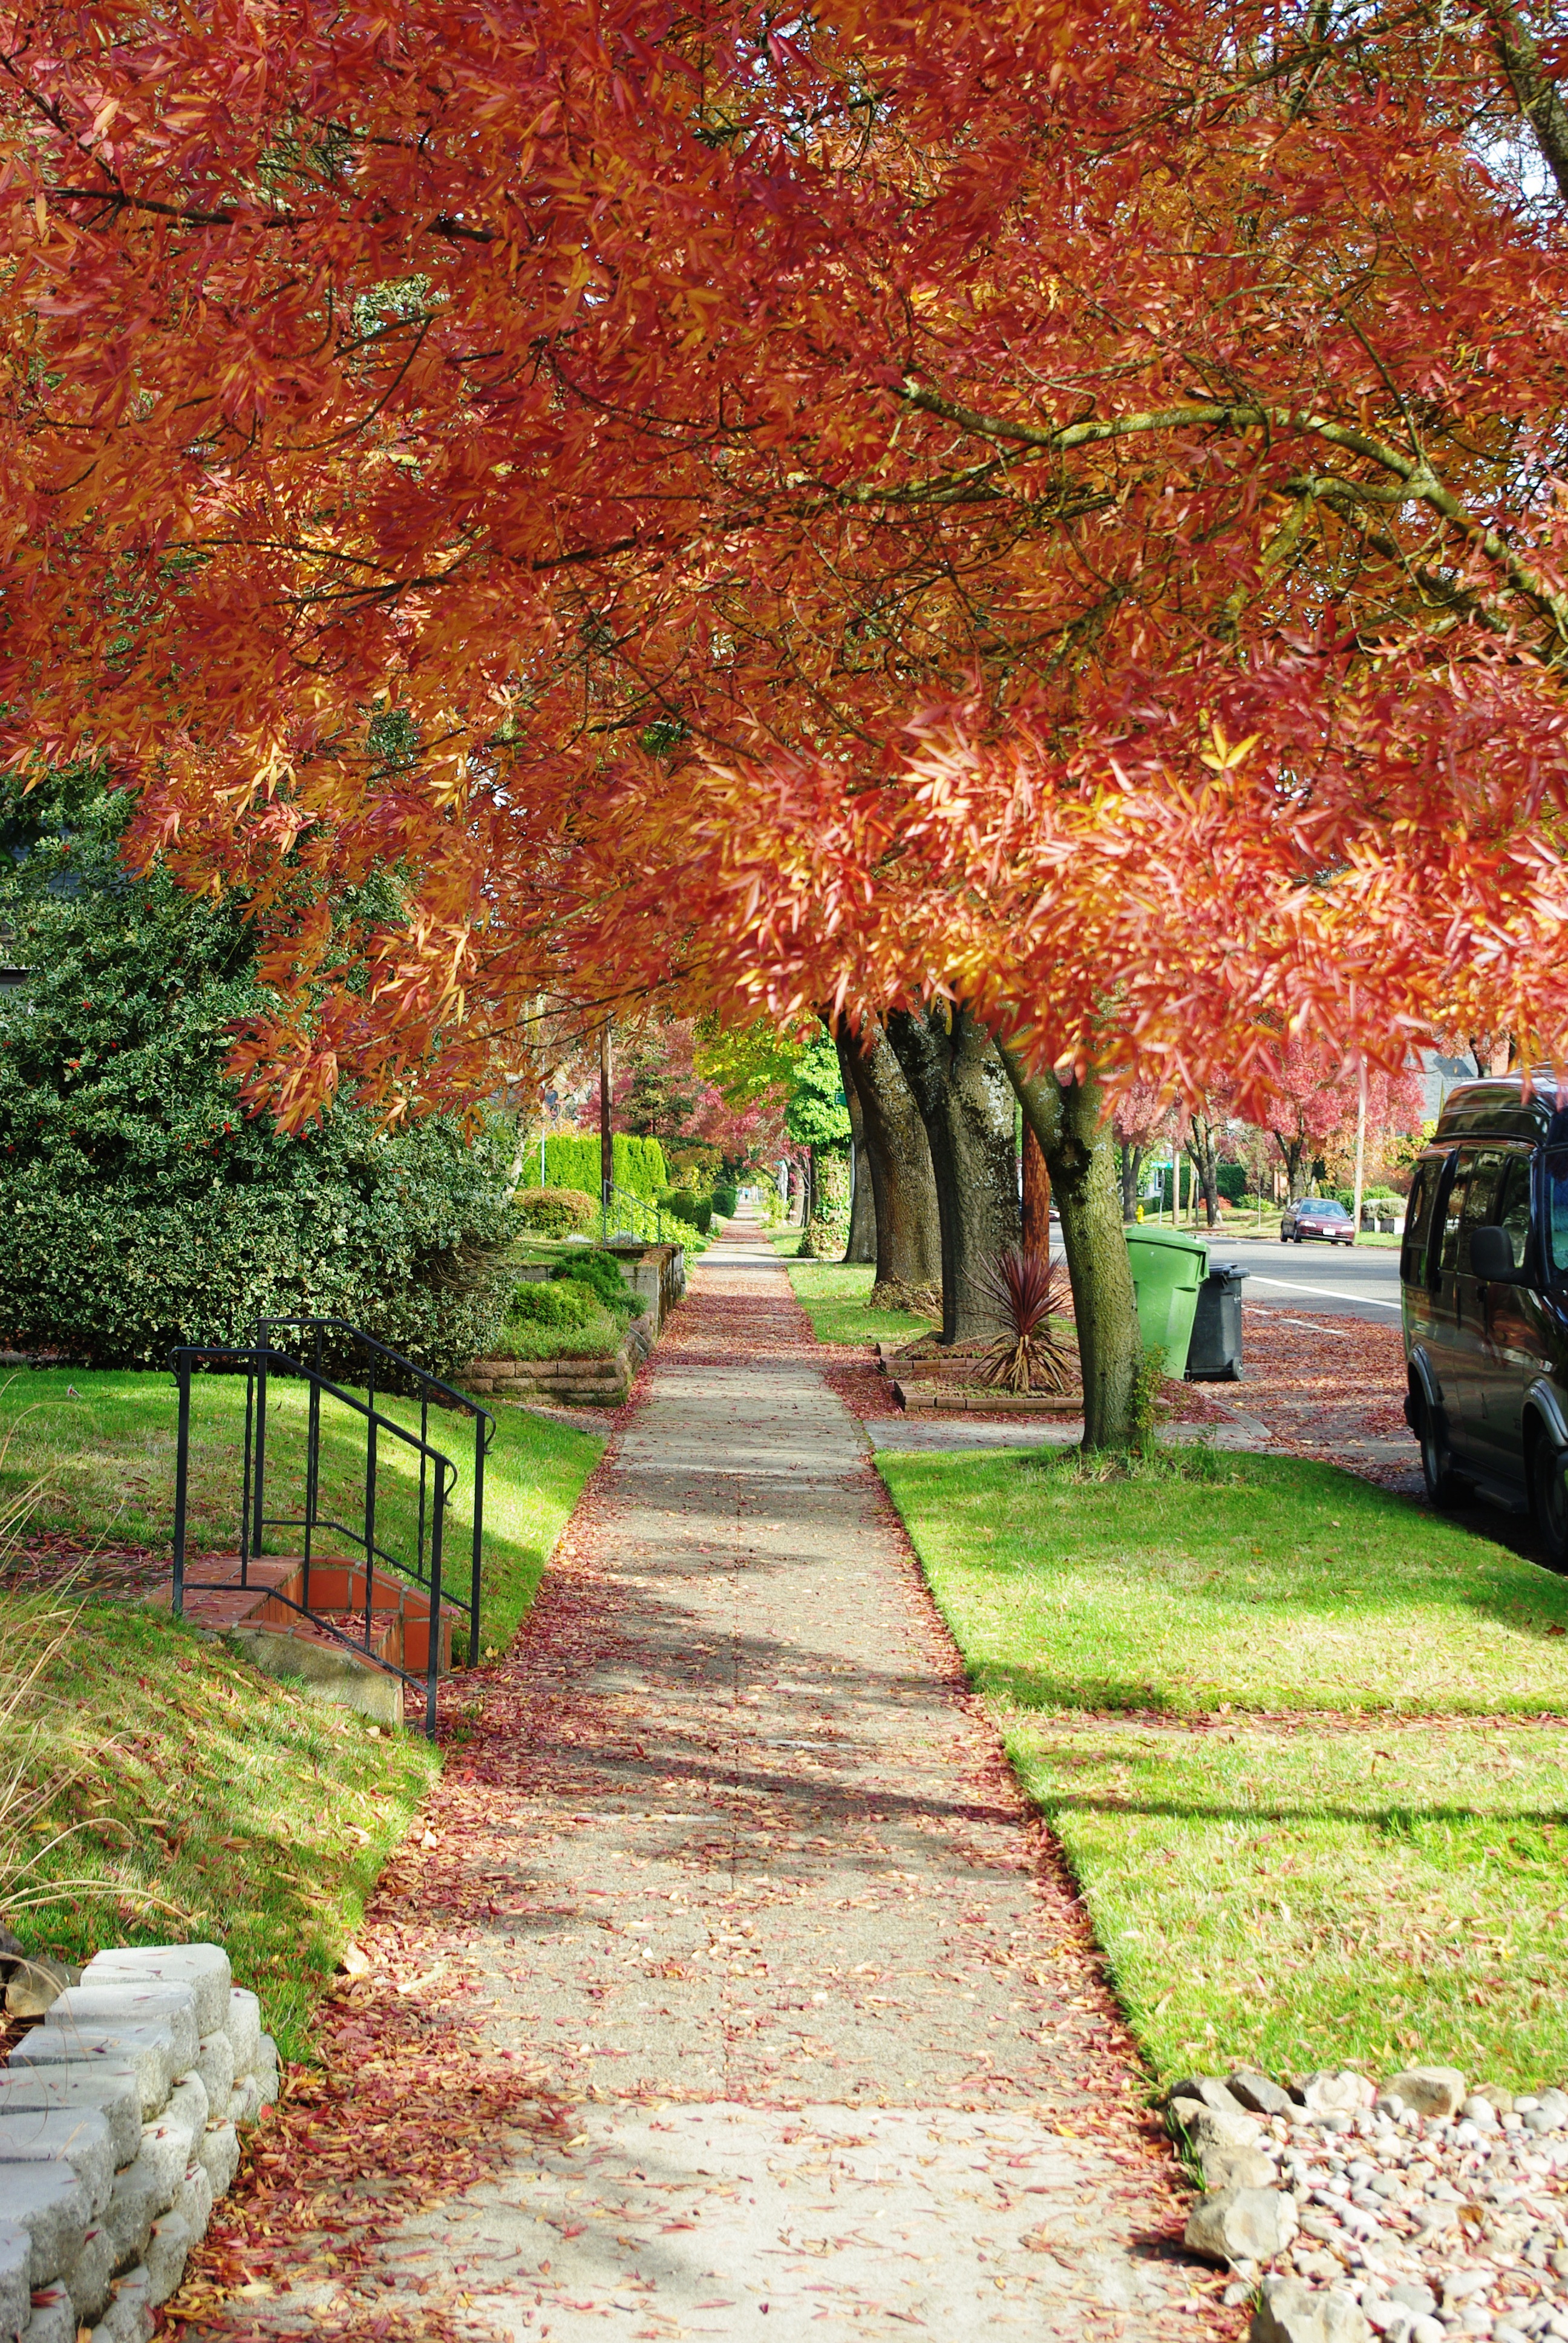 File:Sidewalk in autumn - Salem, Oregon.JPG - Wikimedia Commons